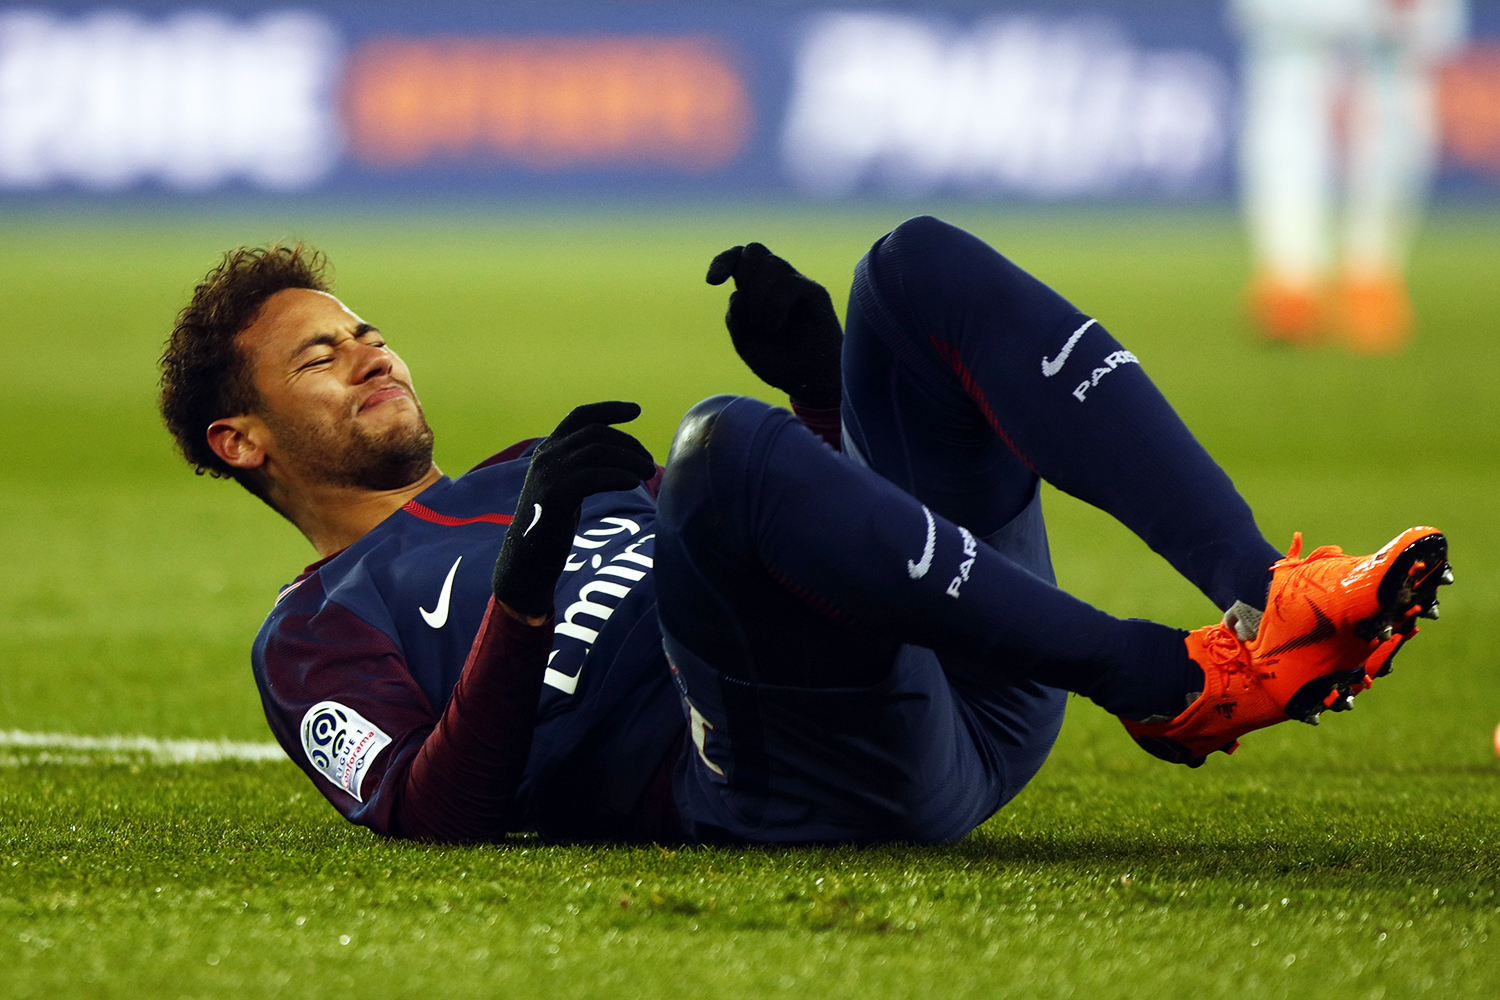 O que o técnico do Paris Saint-germain falou para Neymar?